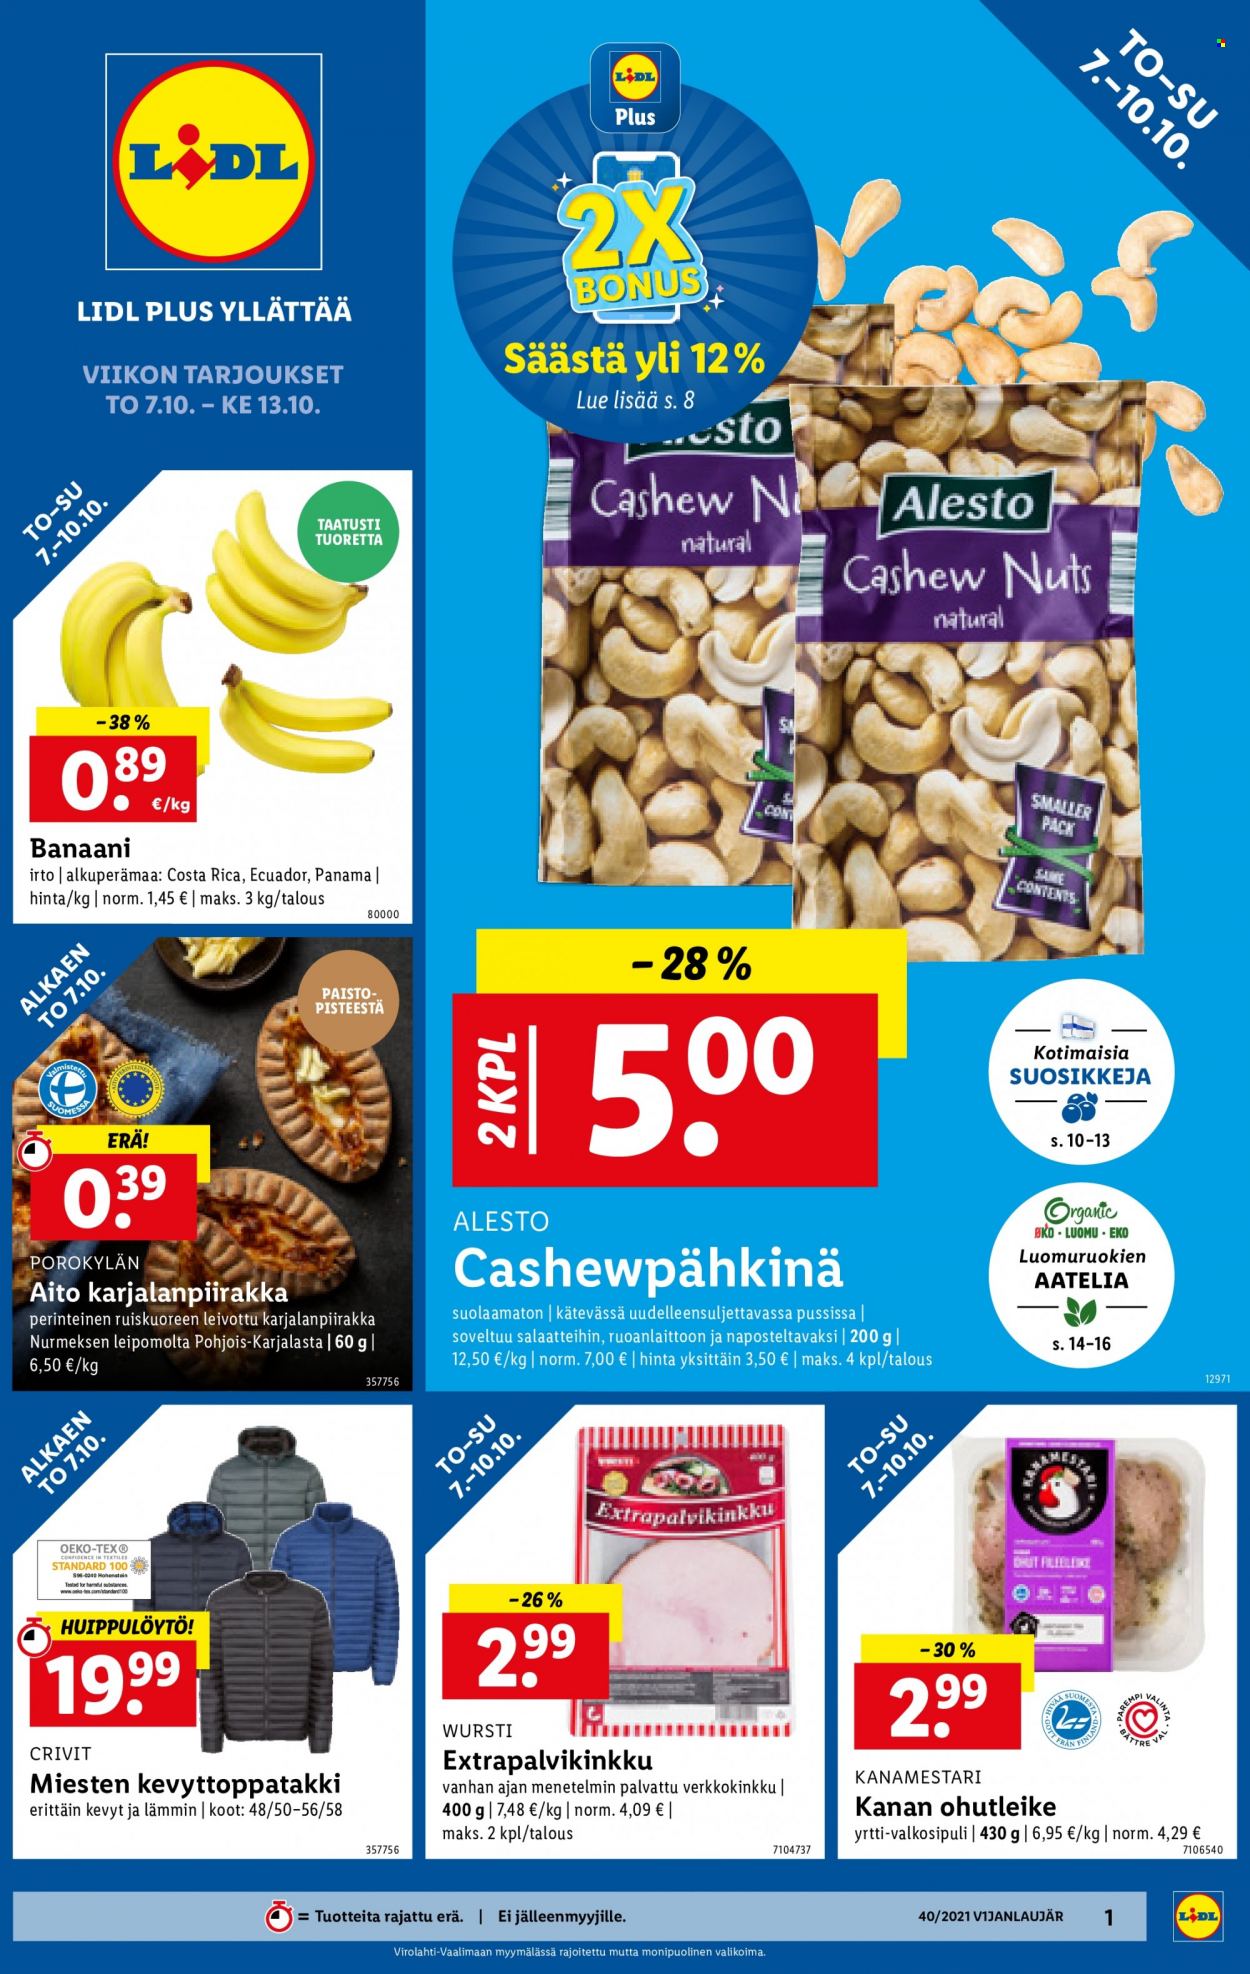 thumbnail - Lidl tarjoukset  - 07.10.2021 - 13.10.2021 - Tarjoustuotteet - banaani, valkosipuli, kanan, cashewpähkinöitä. Sivu 1.